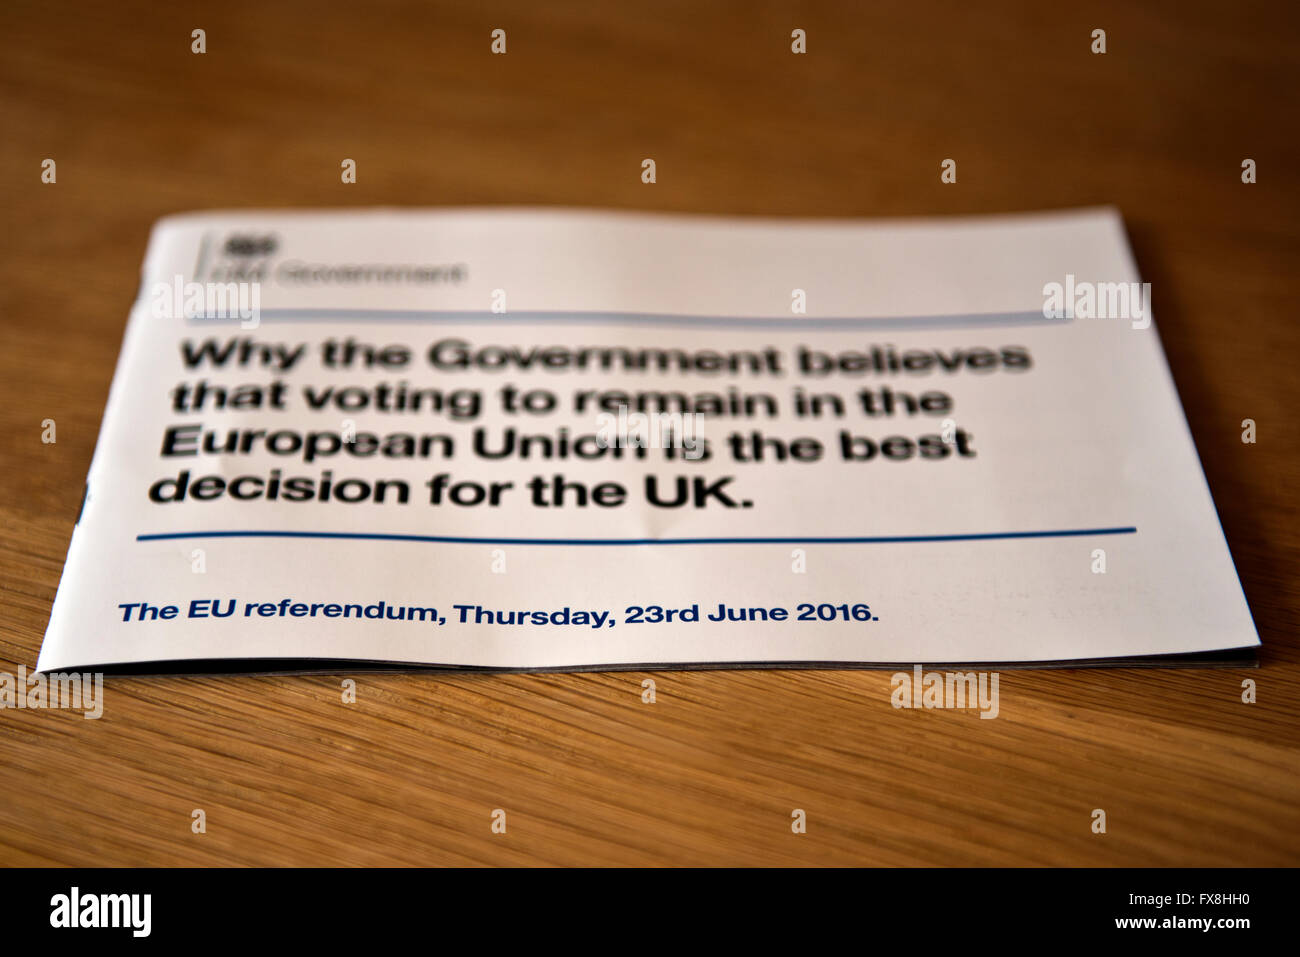 La brochure controversée publiée par le gouvernement qui a utilisé l'argent des contribuables pour persuader le public britannique à voter pour rester dans l'UE. Banque D'Images